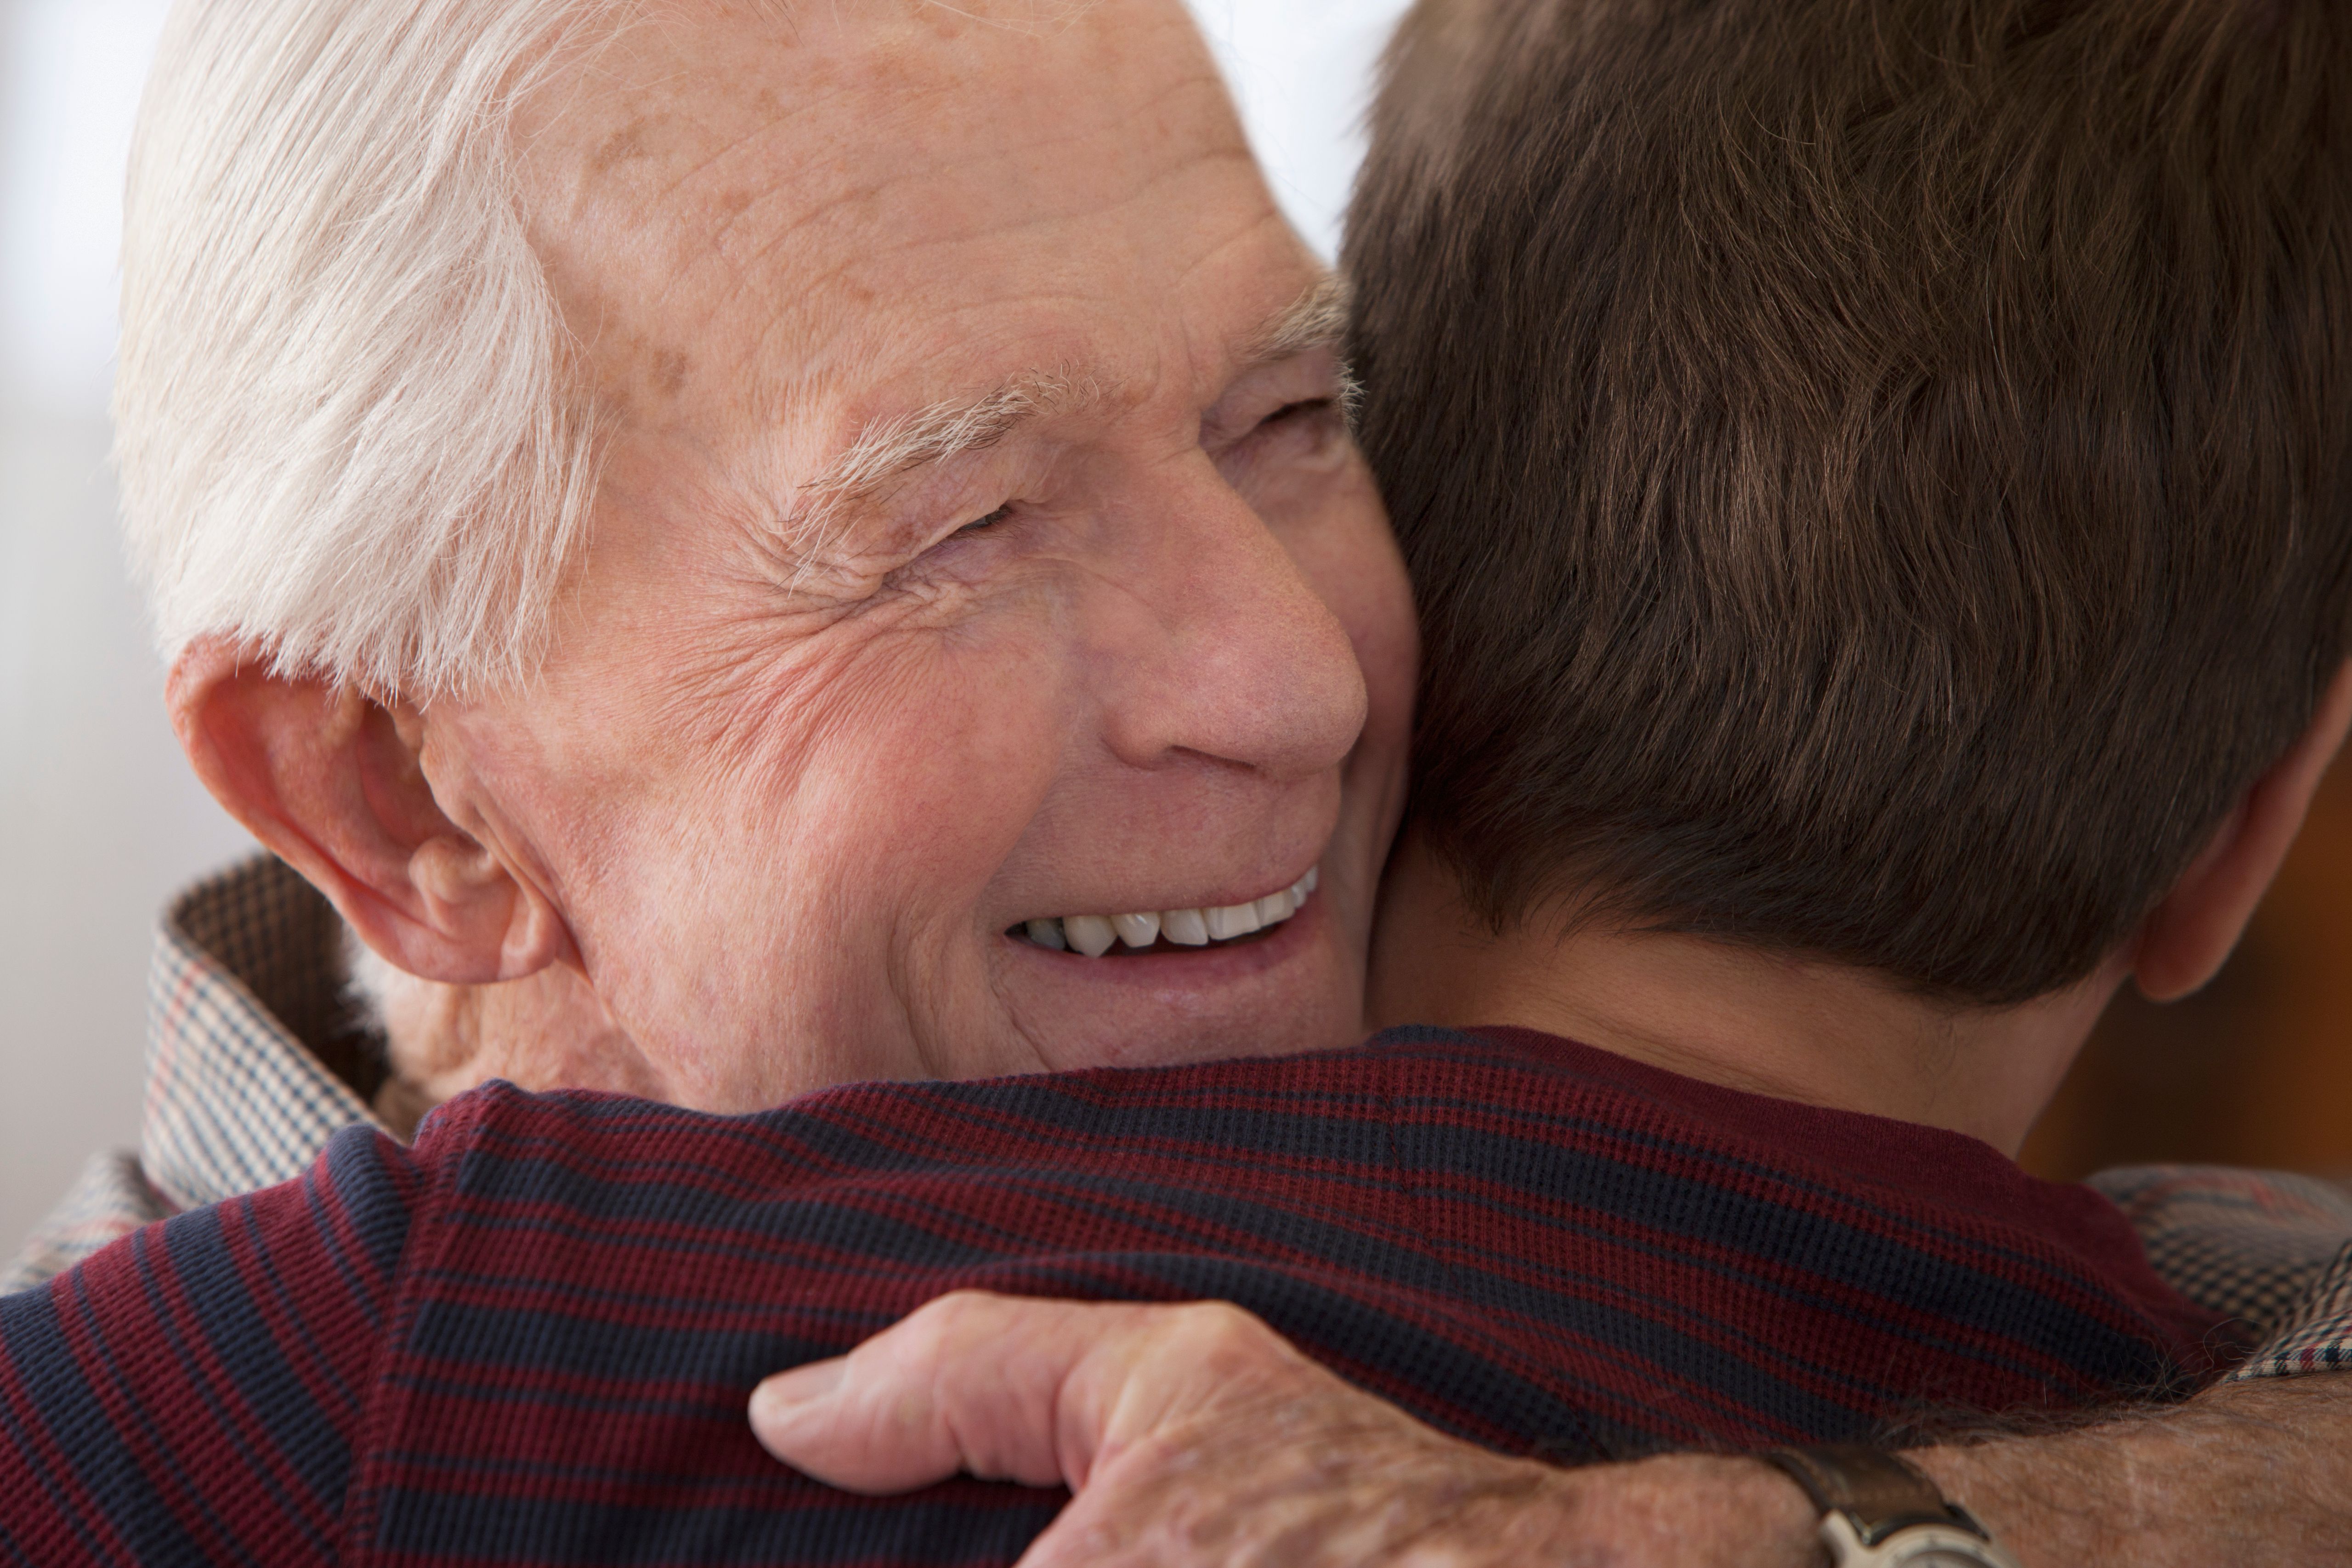 An elderly man hugging a boy. | Source: Shutterstock